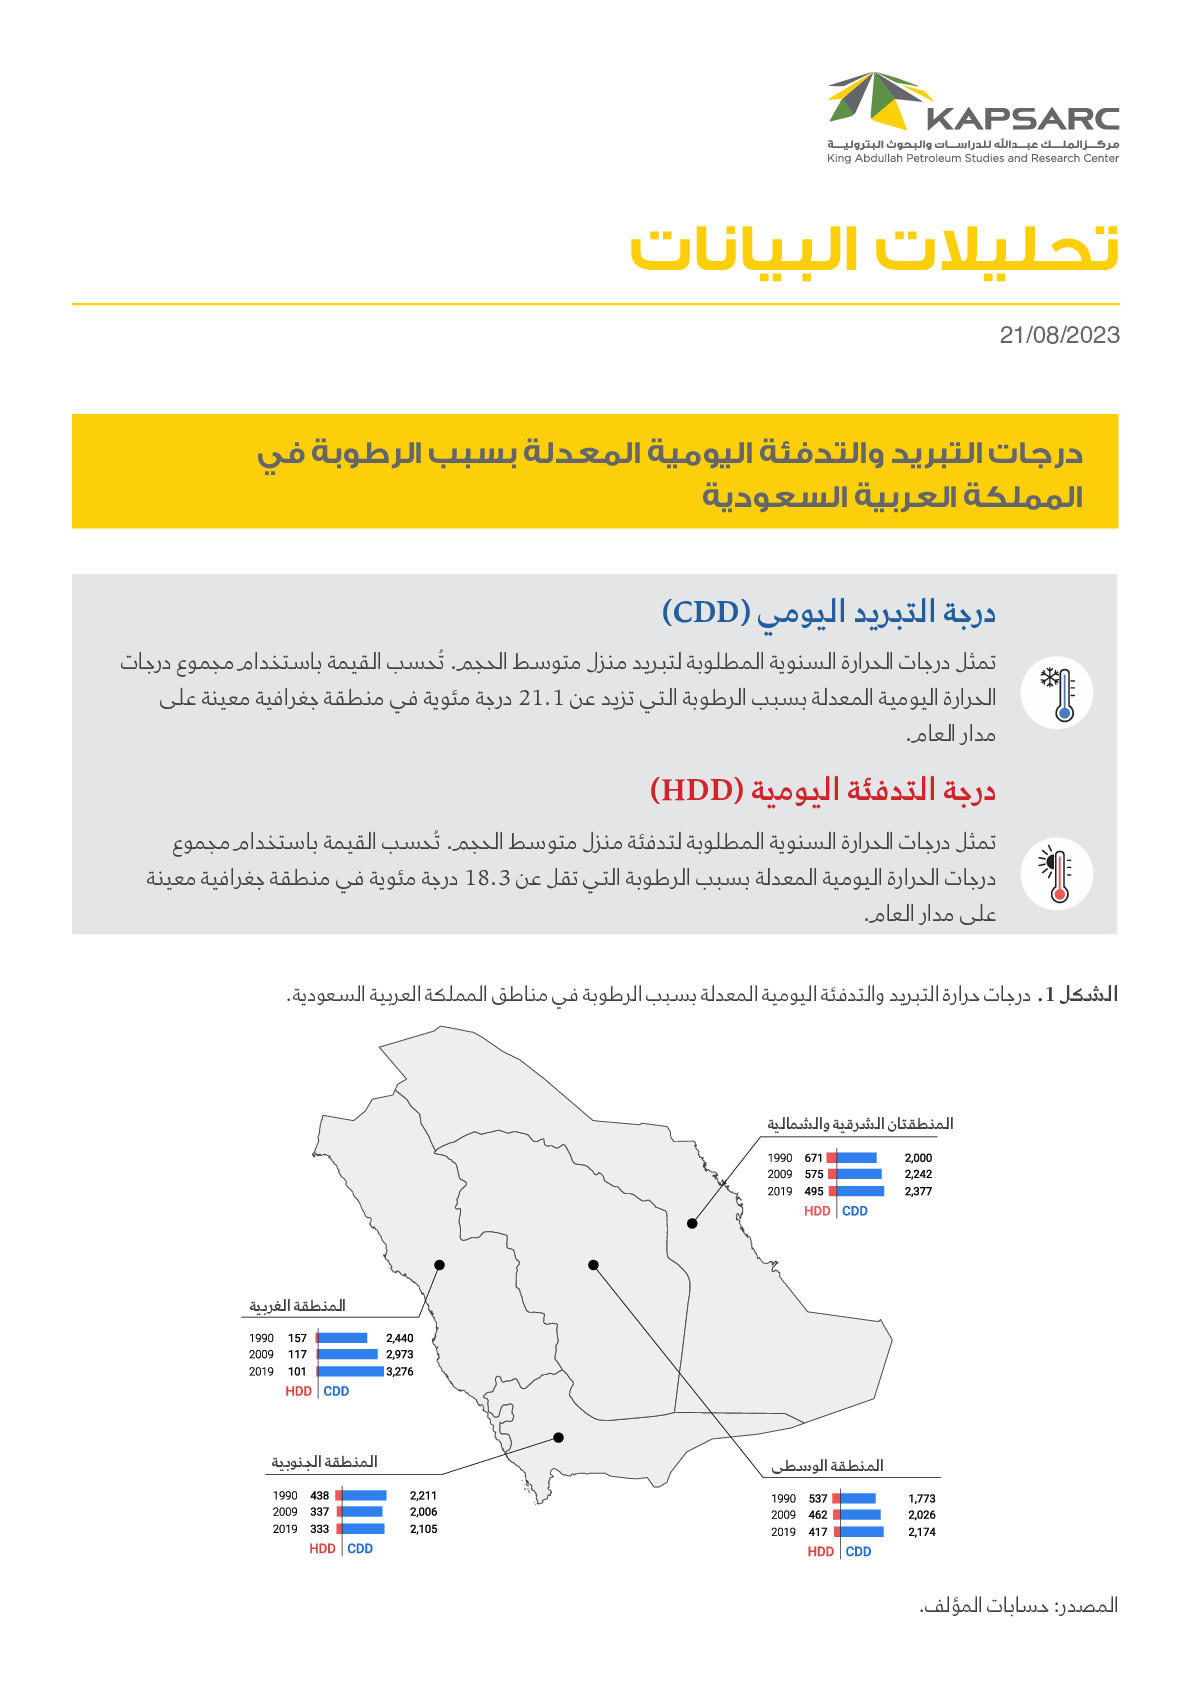 درجات التبريد والتدفئة اليومية المعدلة بسبب الرطوبة في المملكة العربية السعودية